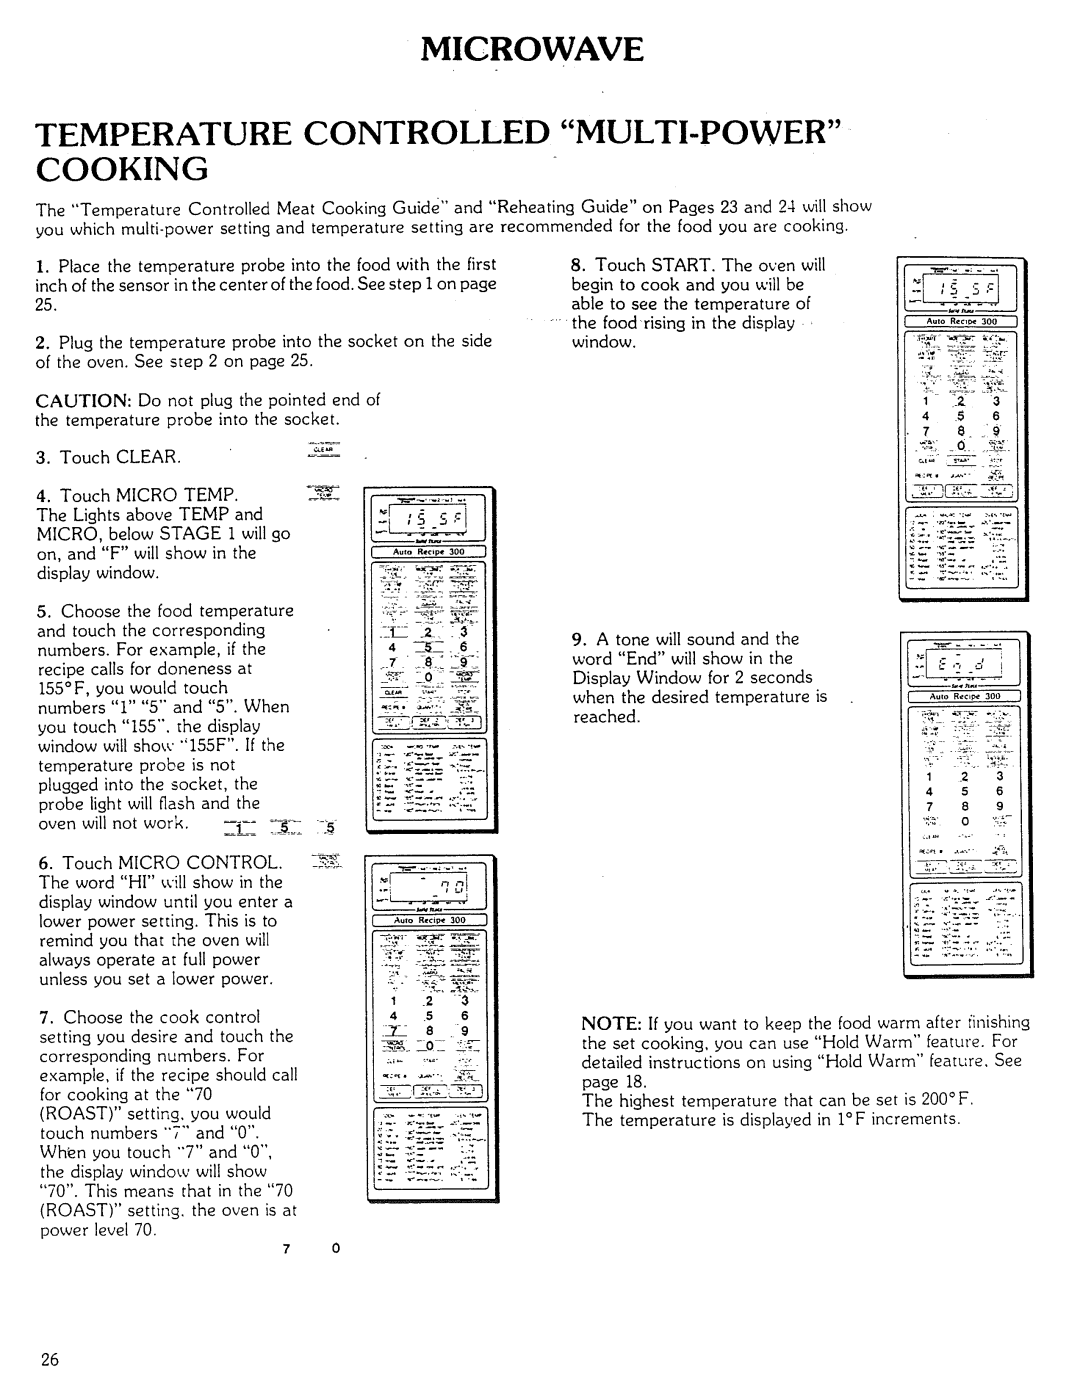 Kenmore Microwave Oven manual Temperature Controlled Multi-Powercooking, iiiii: :iil, 5 $ 